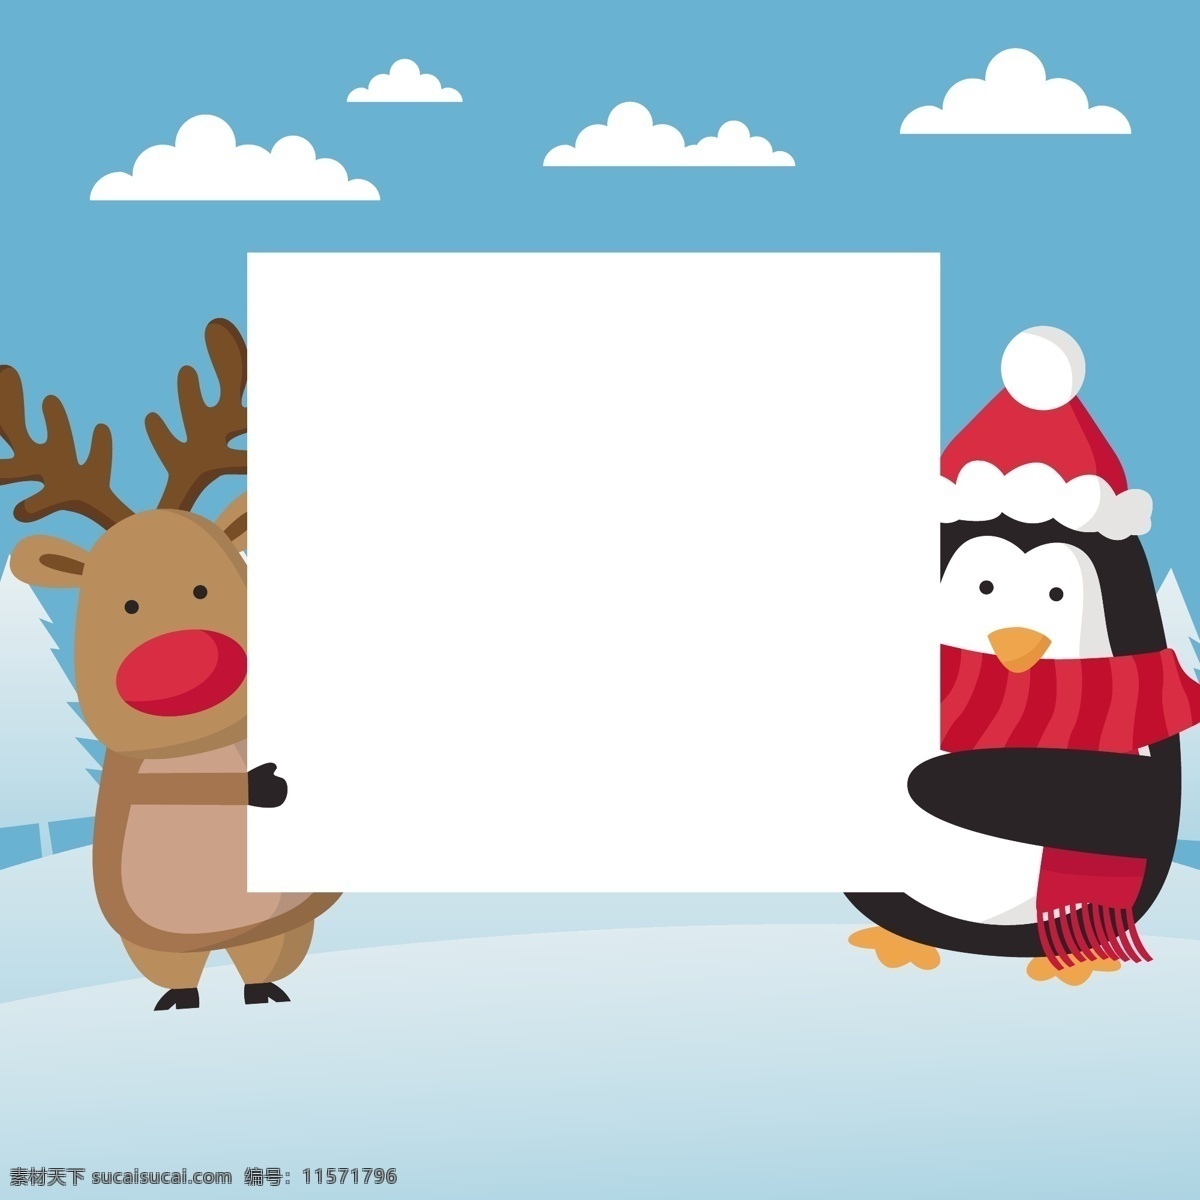 卡通 圣诞 人物图片 卡通人员 动漫人员 动漫人偶 卡通人偶 圣诞老人 雪人 女孩 人物剪影 麋鹿 狐狸 圣诞元素 圣诞人物 圣诞雪人 动漫动画 动漫人物